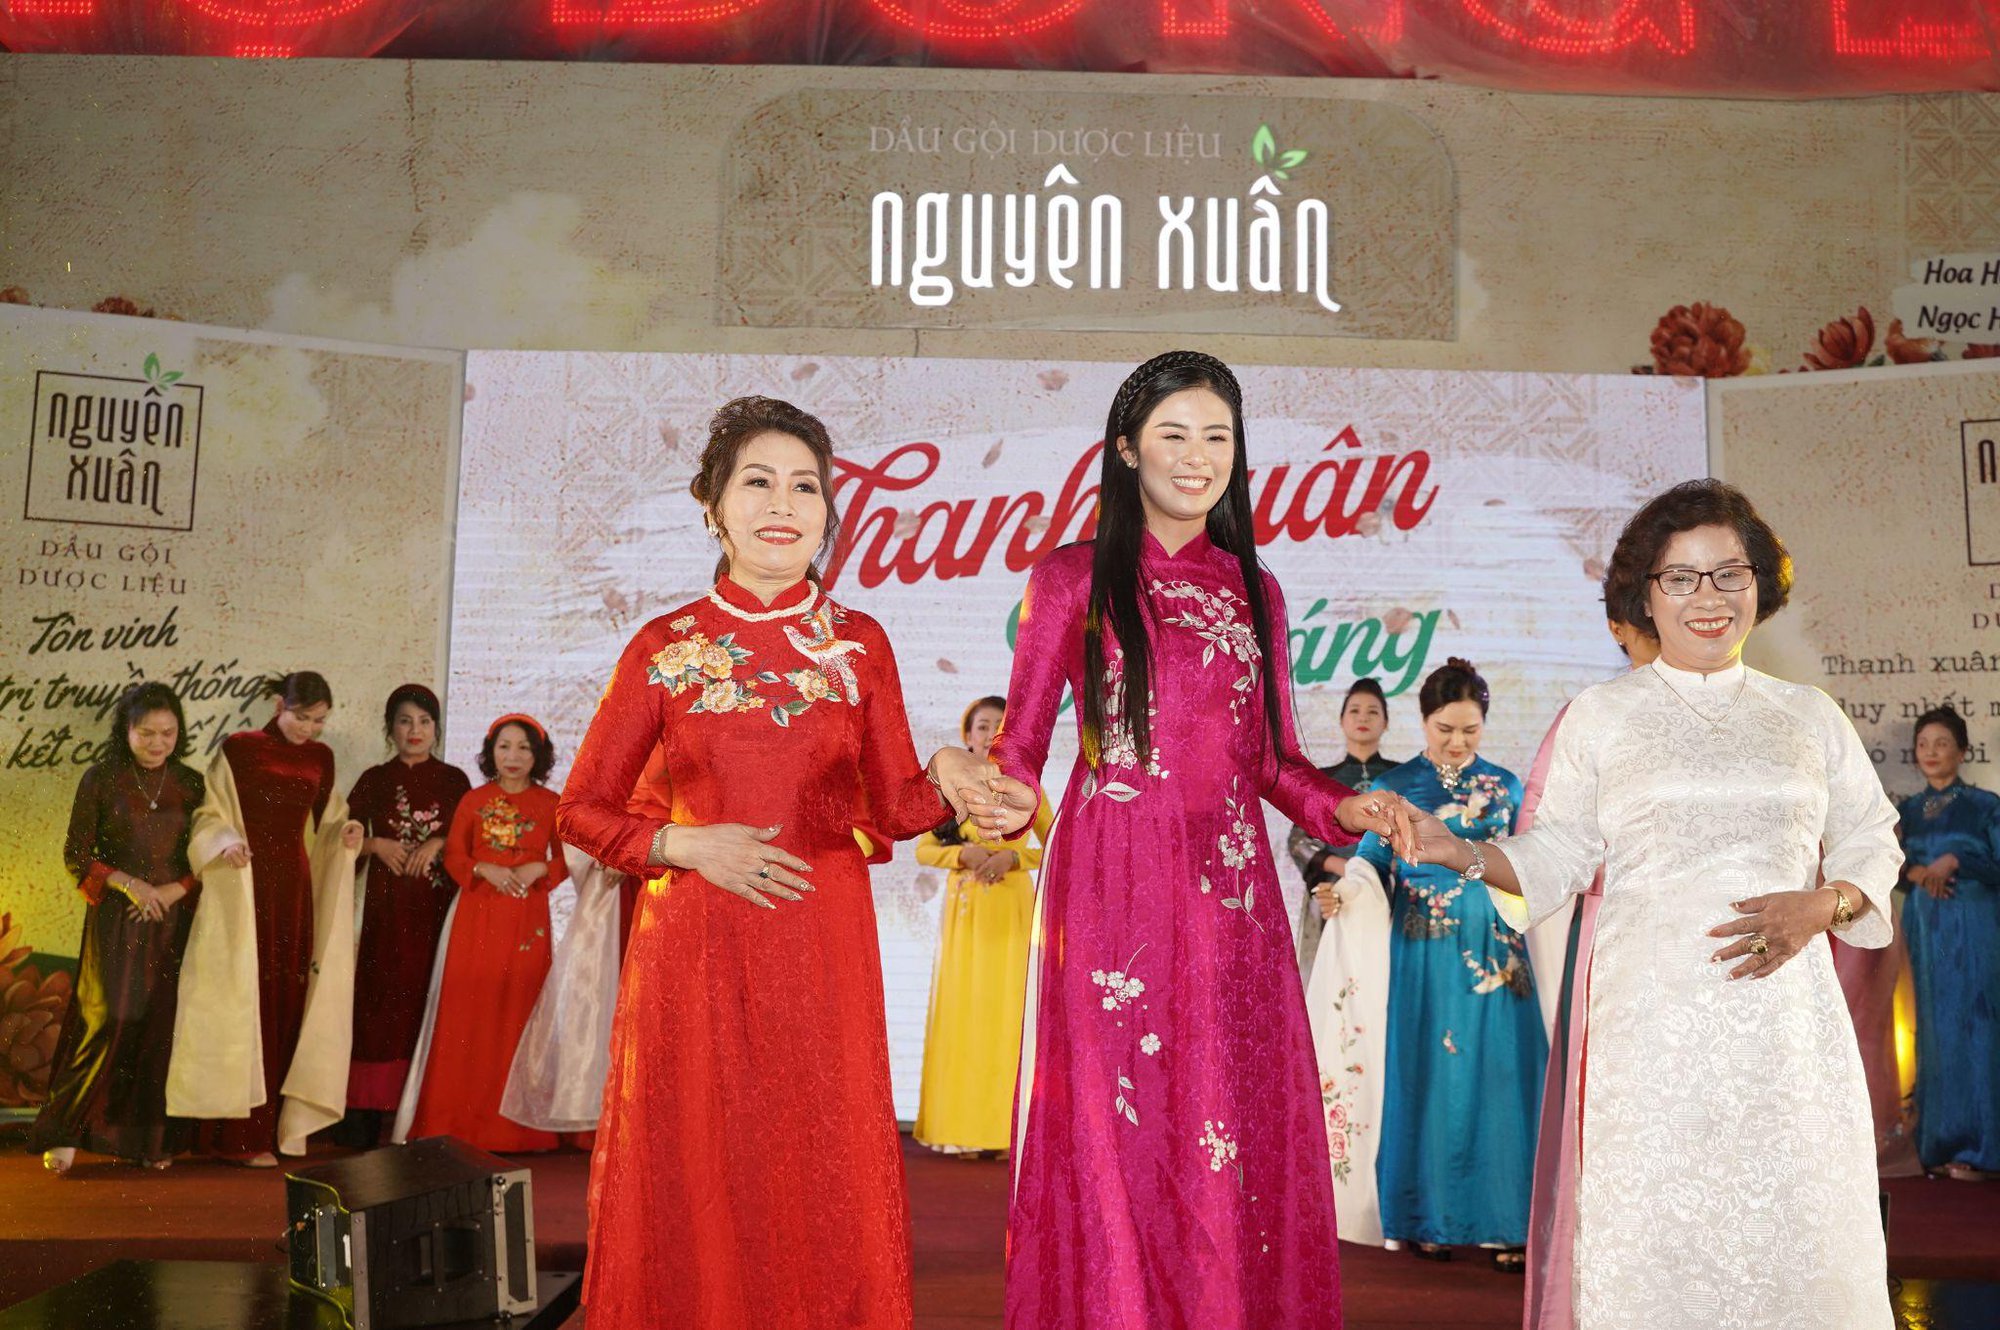 Hoa hậu Mai Phương, Hoa hậu Ngọc Hân, Da LAB hội ngộ tại sự kiện “Thanh Xuân Là Đây” - Ảnh 3.